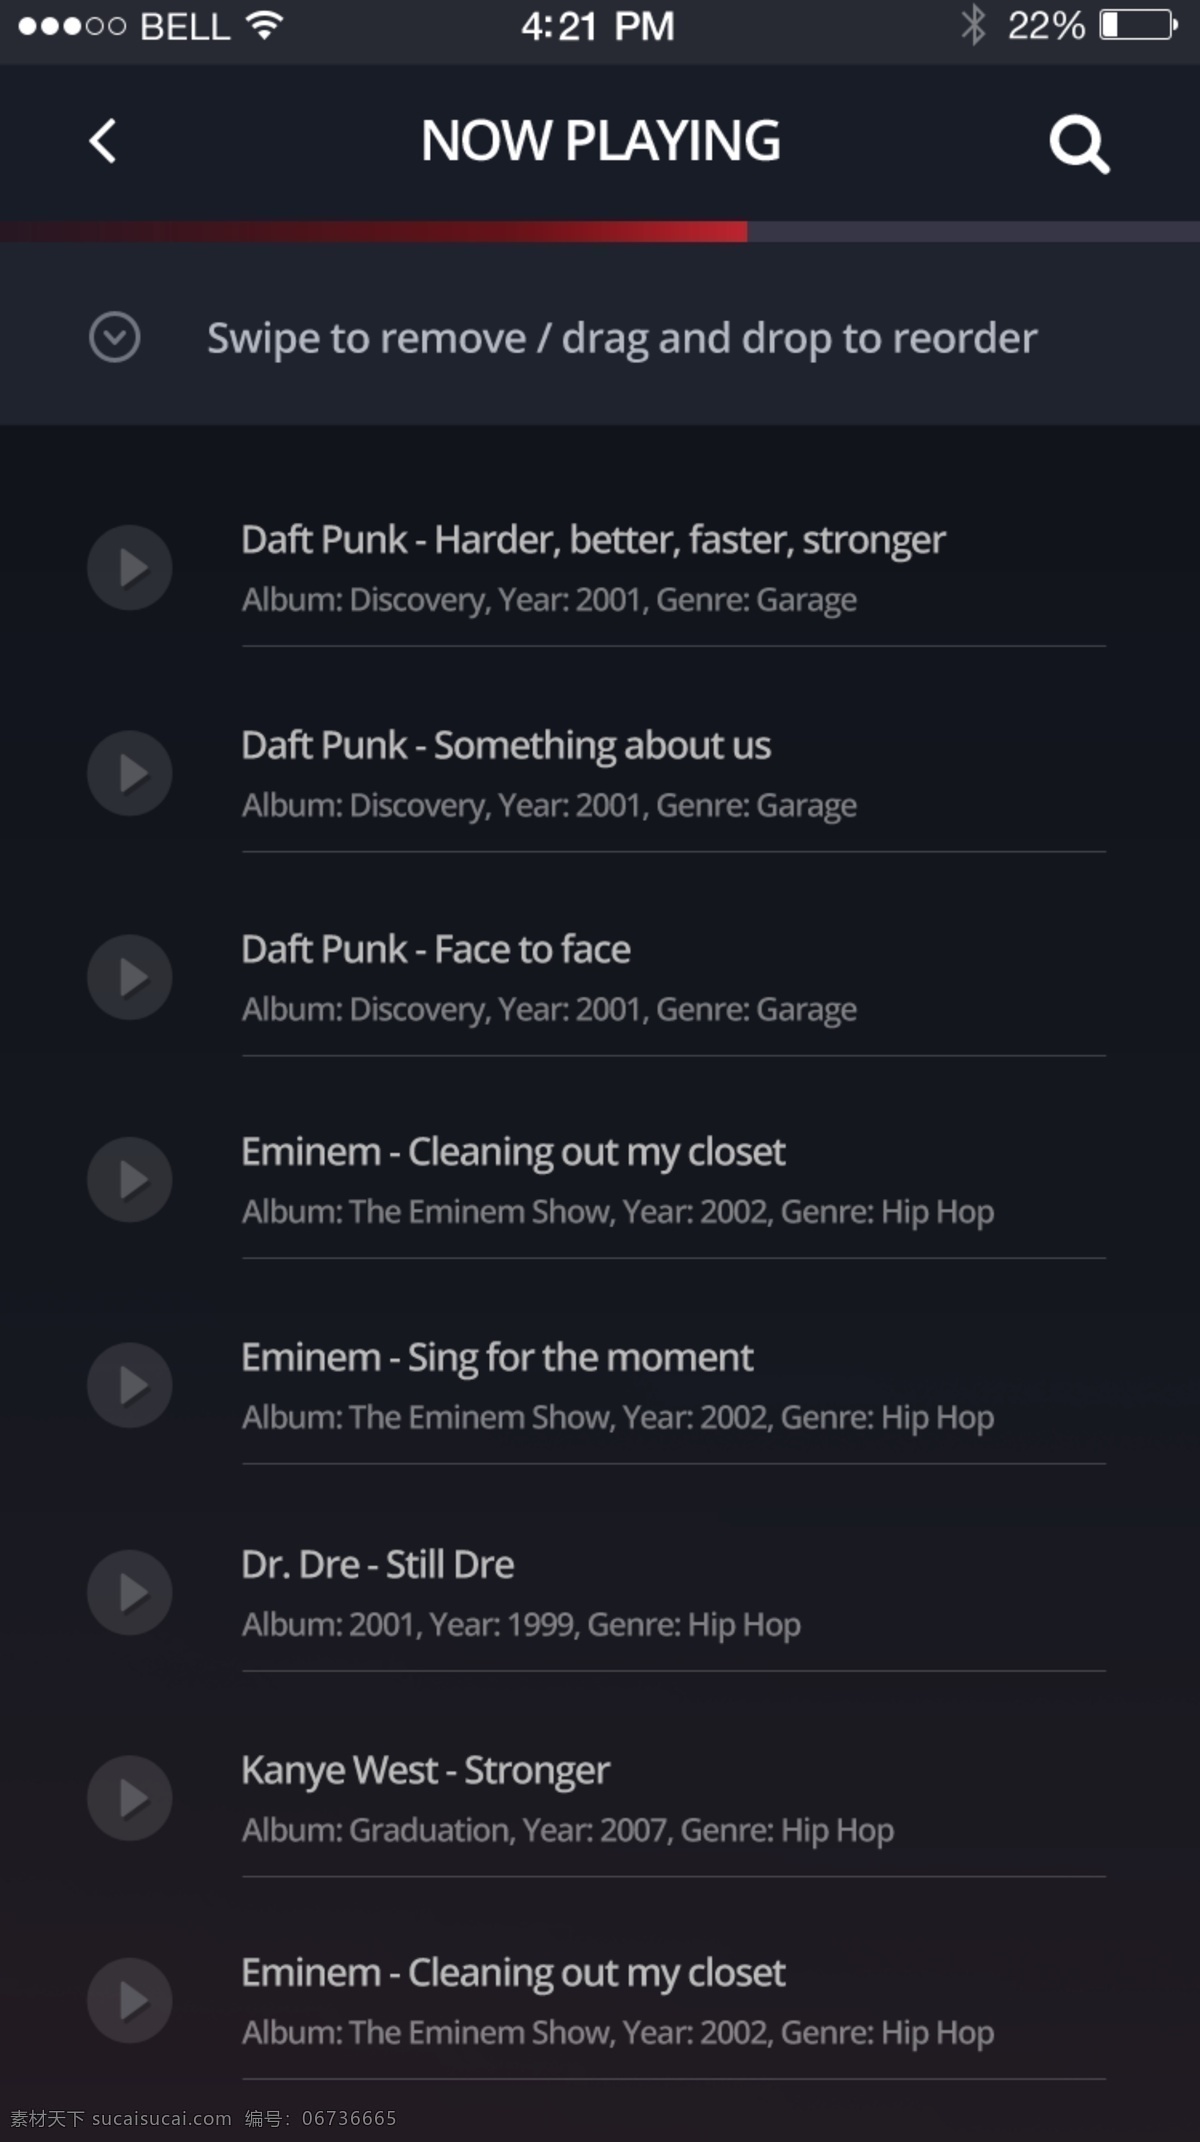 音乐 播放器 app 页面 设计素材 模板 高清 黑色